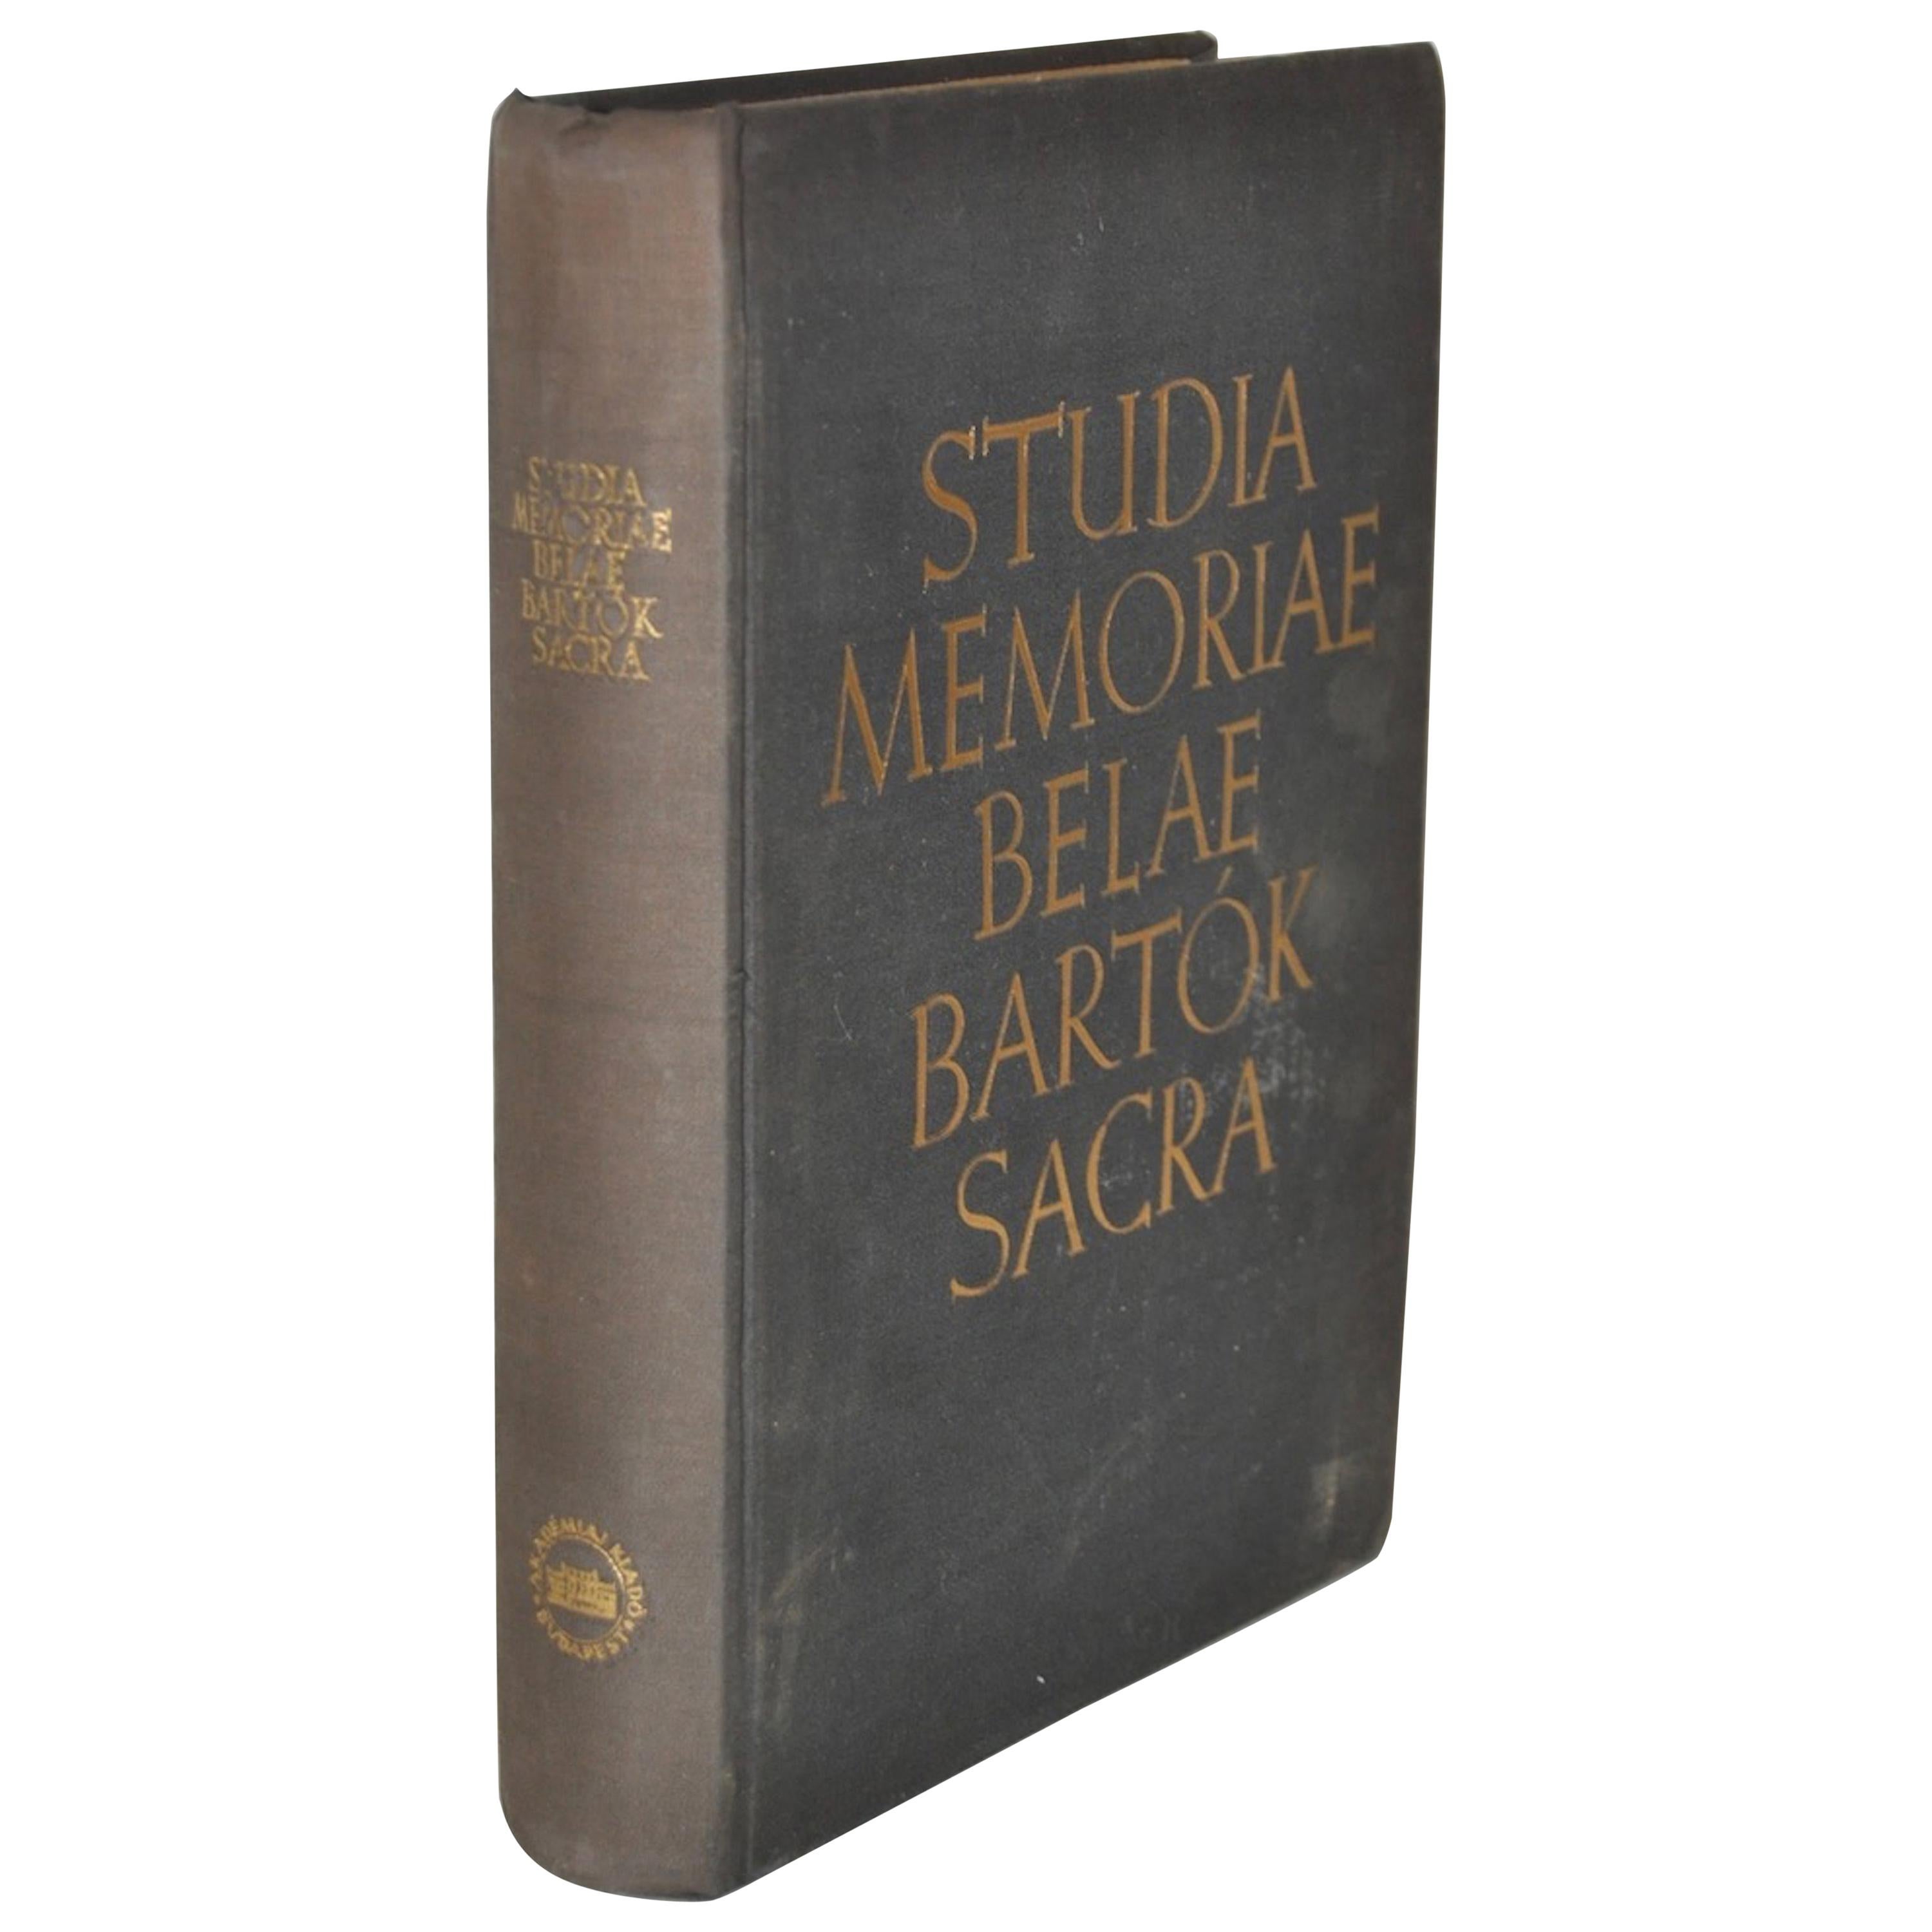 Studia Memoriae Belae Bartok Sacra Signed by Paul Robeson 'personal copy'